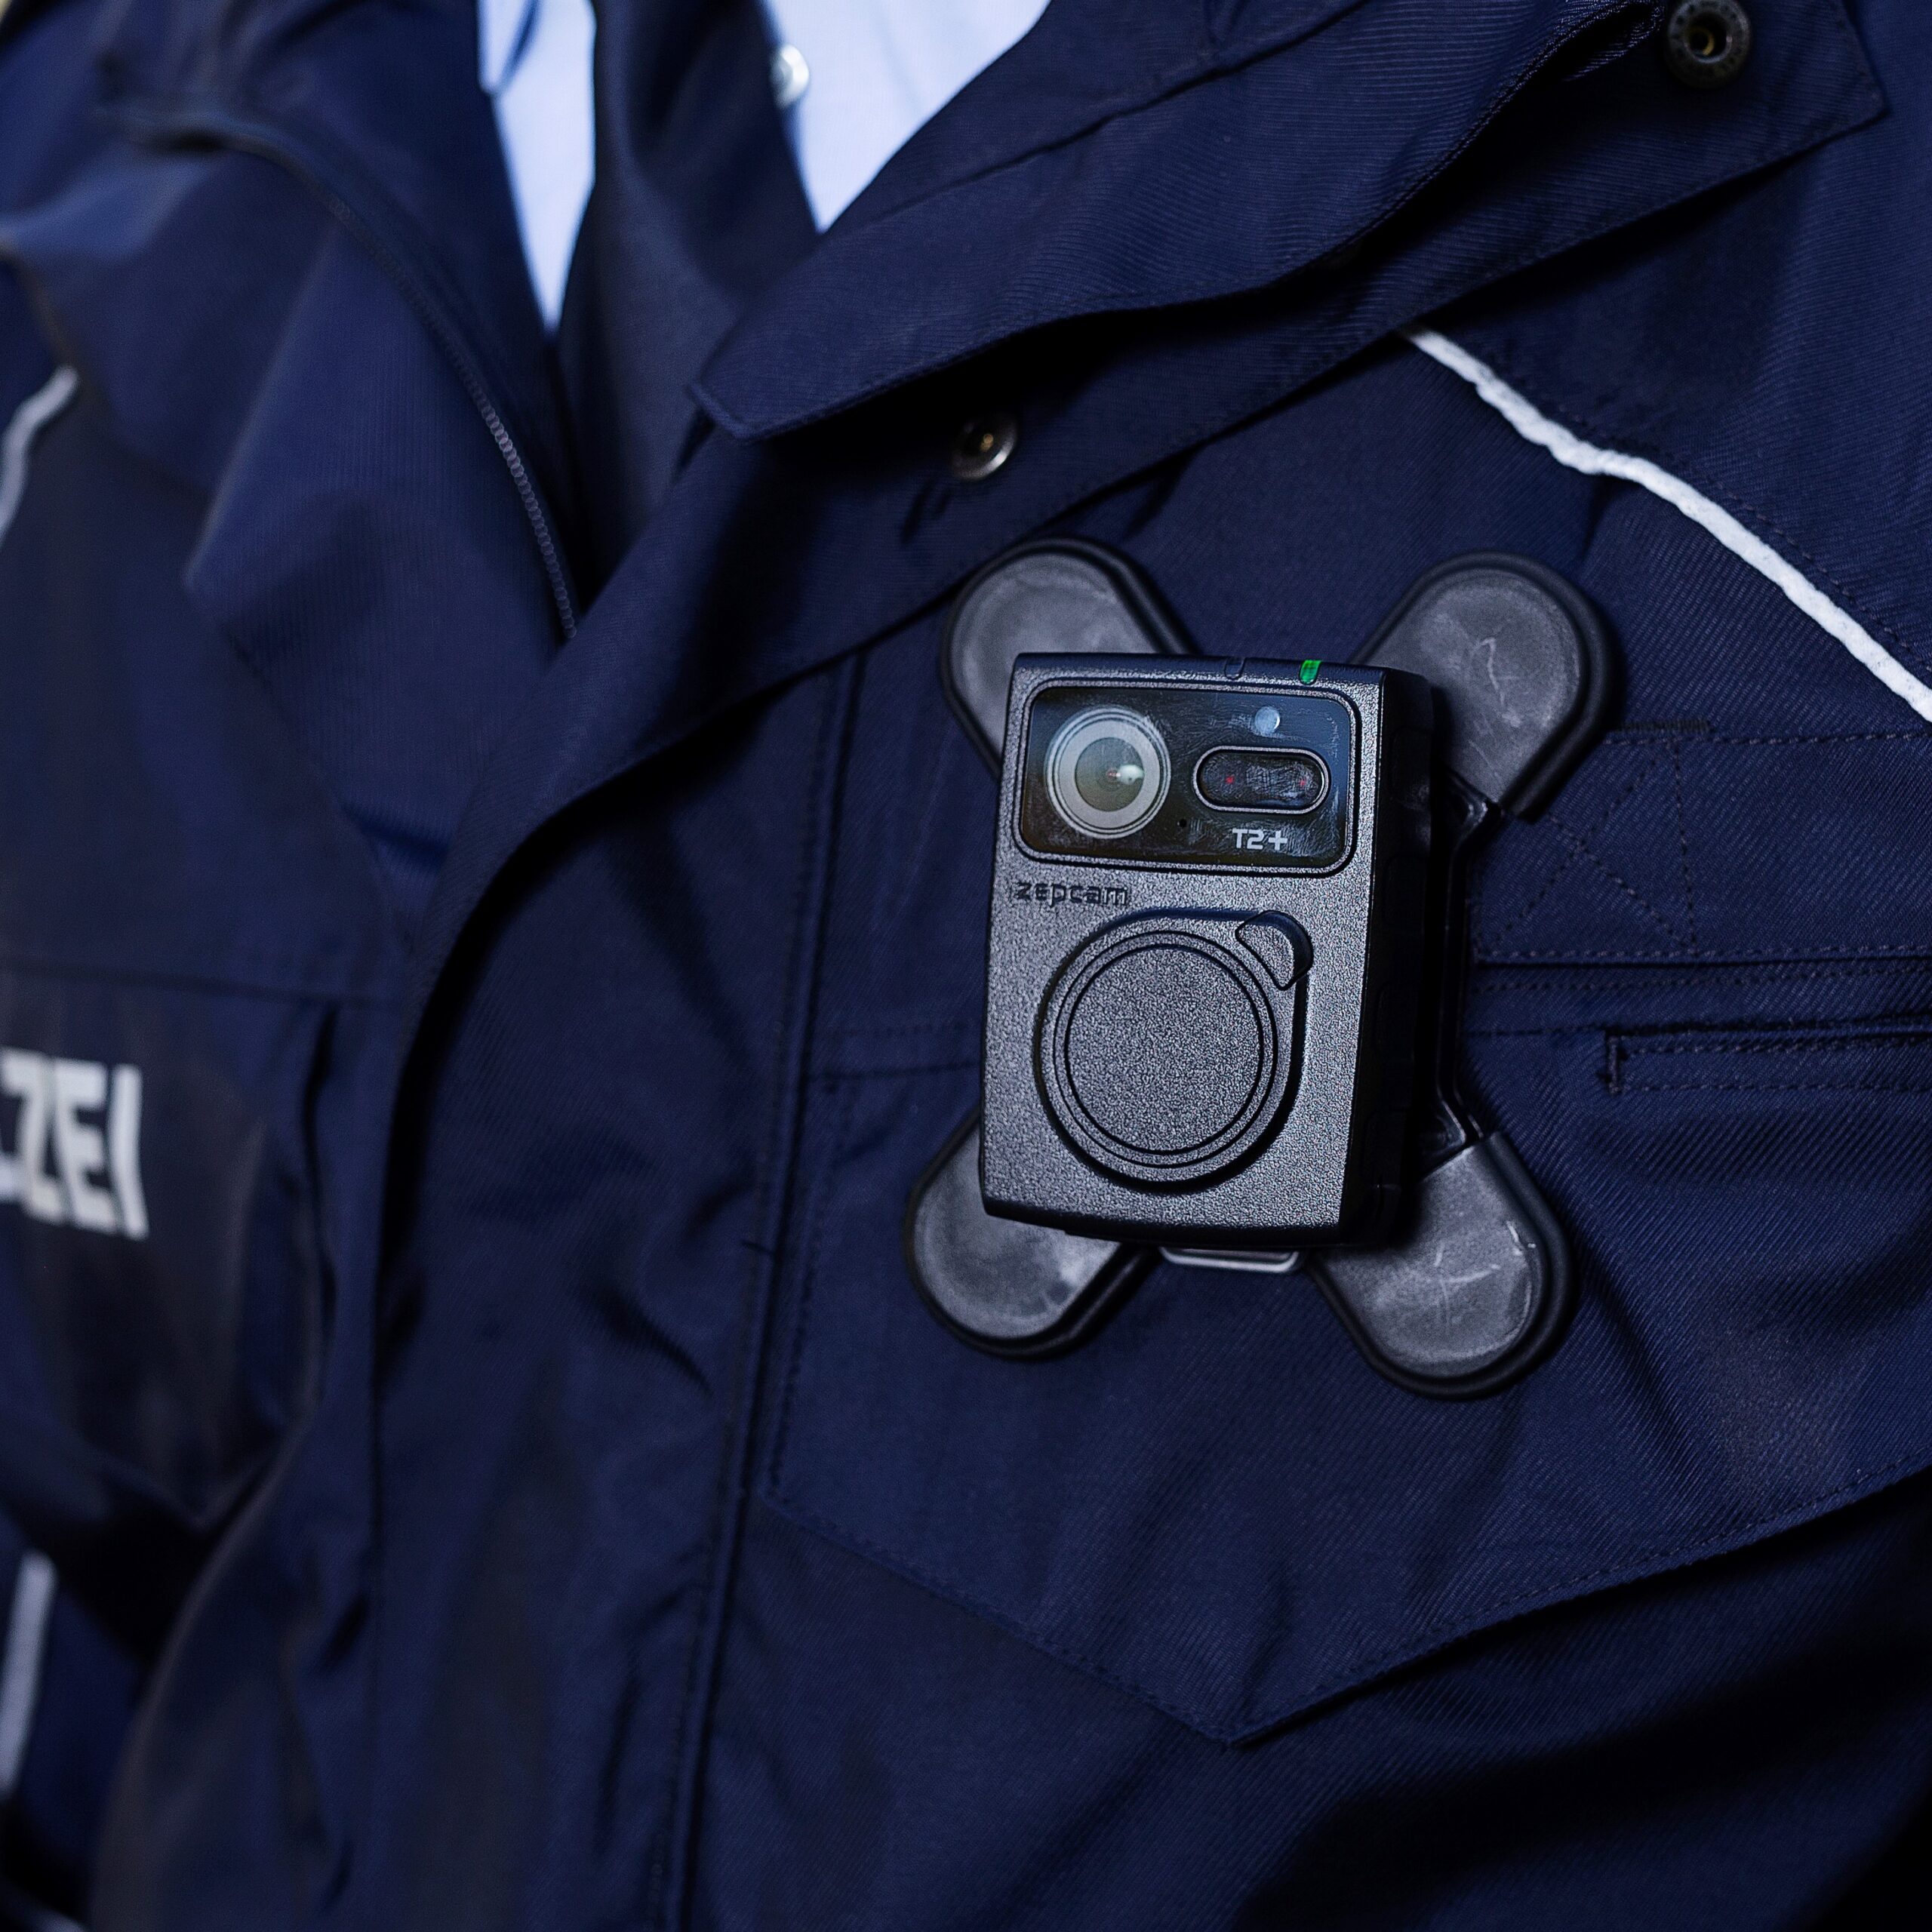 Bodycam-Halterungen für die Polizei